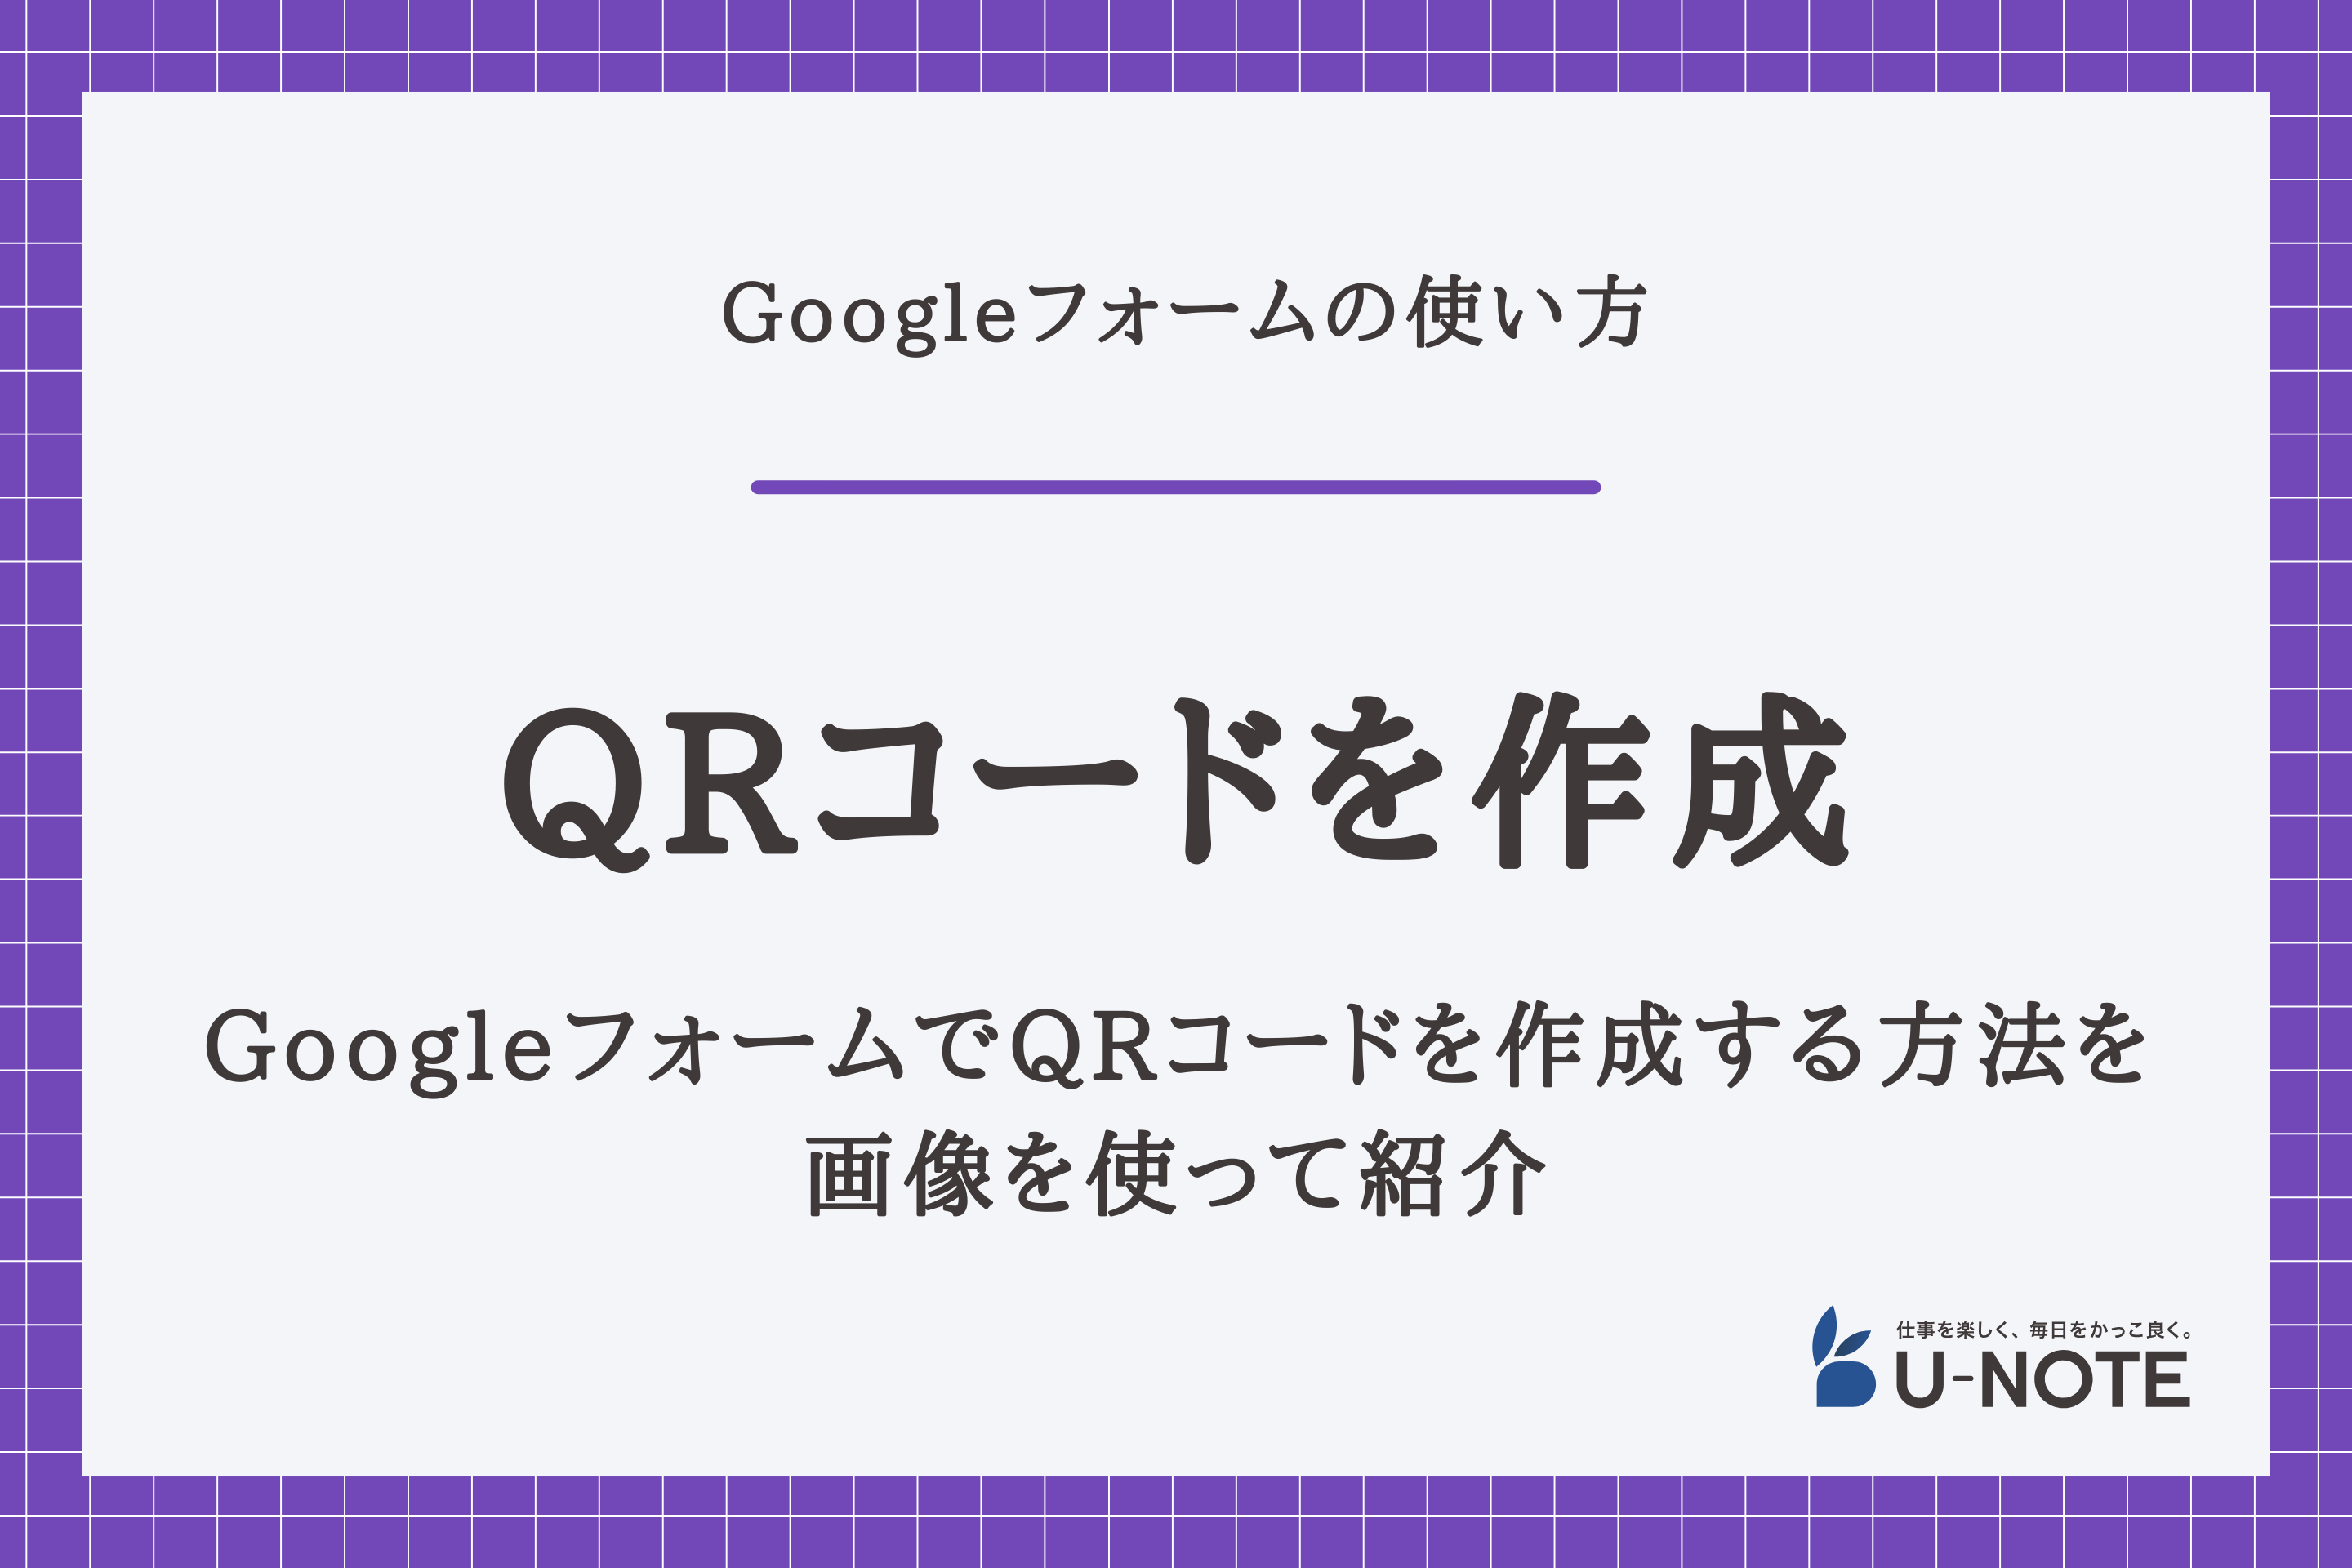 GoogleフォームでQRコードを作成する方法を画像を使って紹介